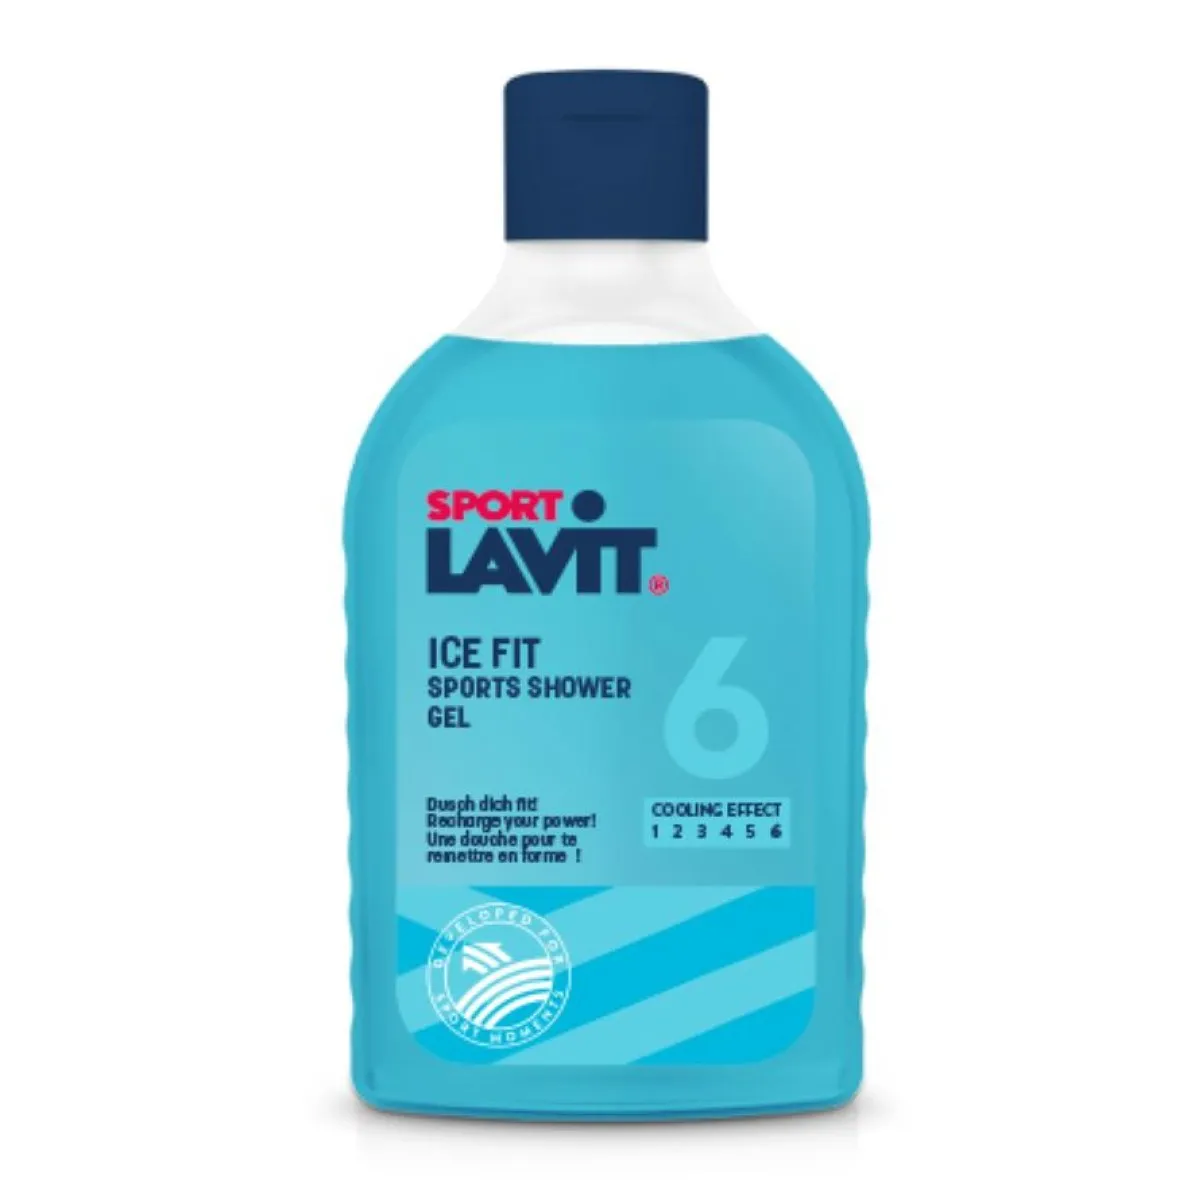 Gel de ducha Lavit Sport Shower Fit